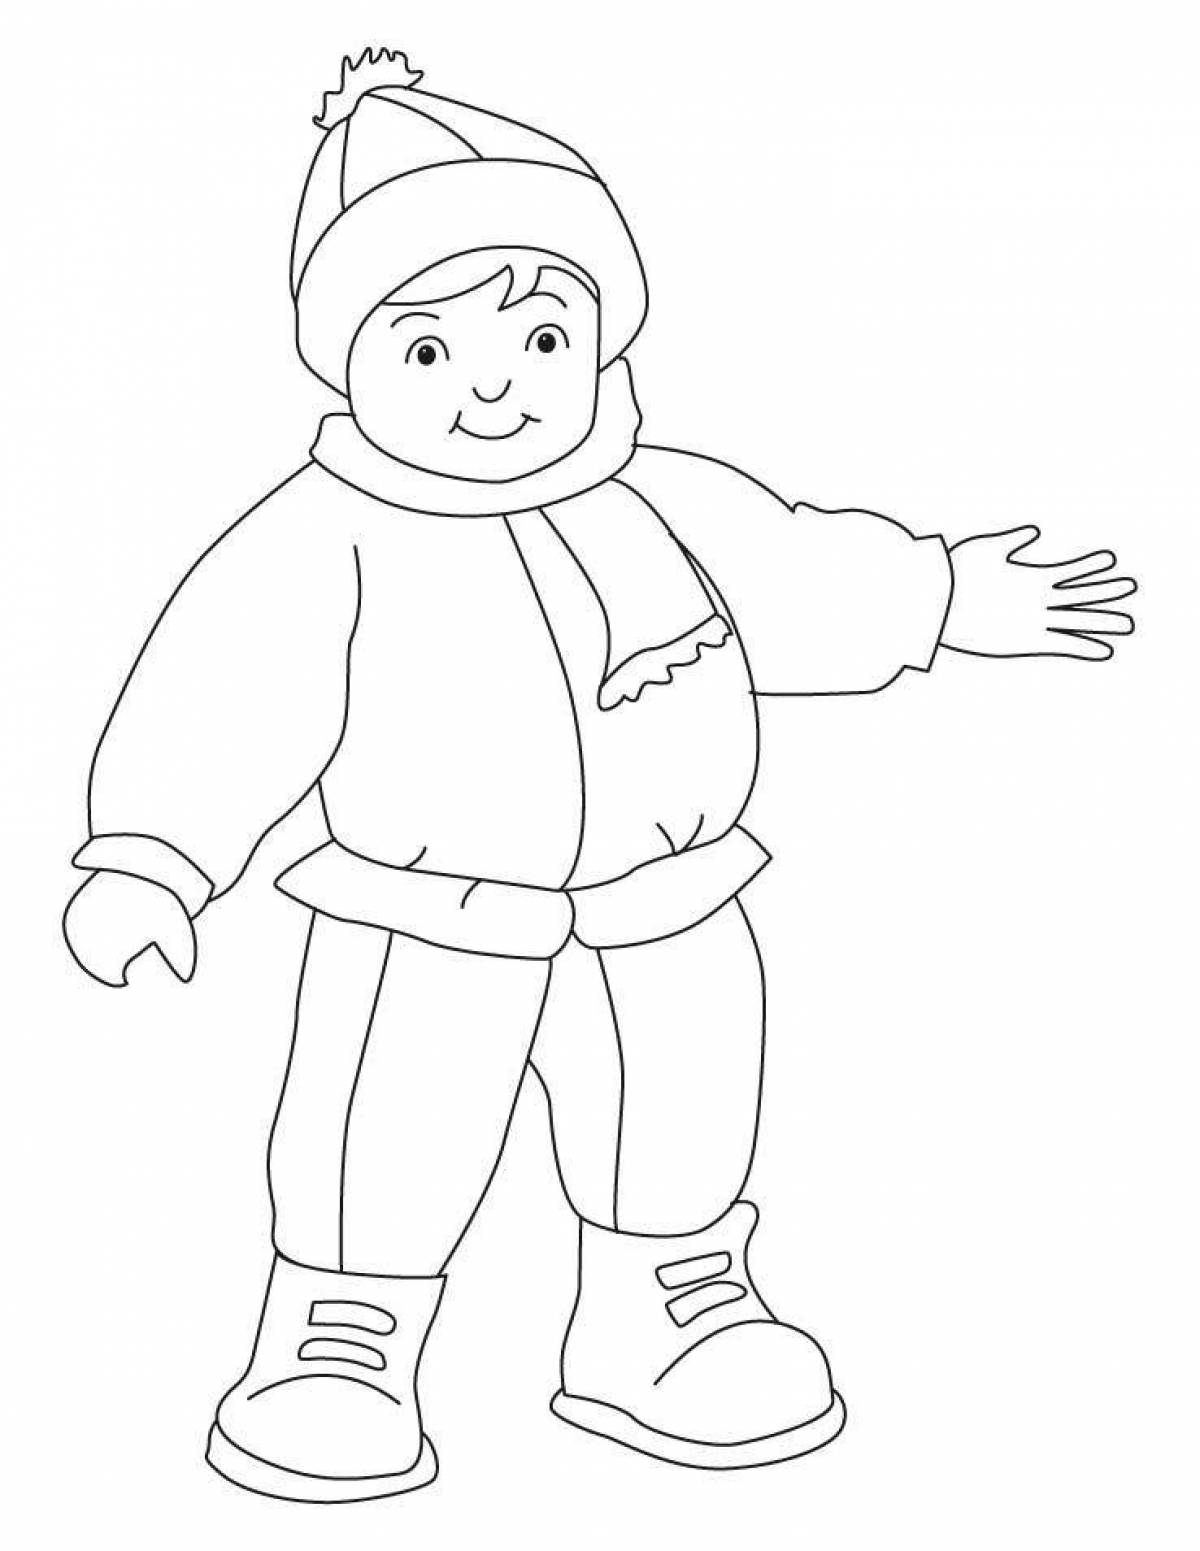 Snuggly coloring page мальчик в зимней одежде